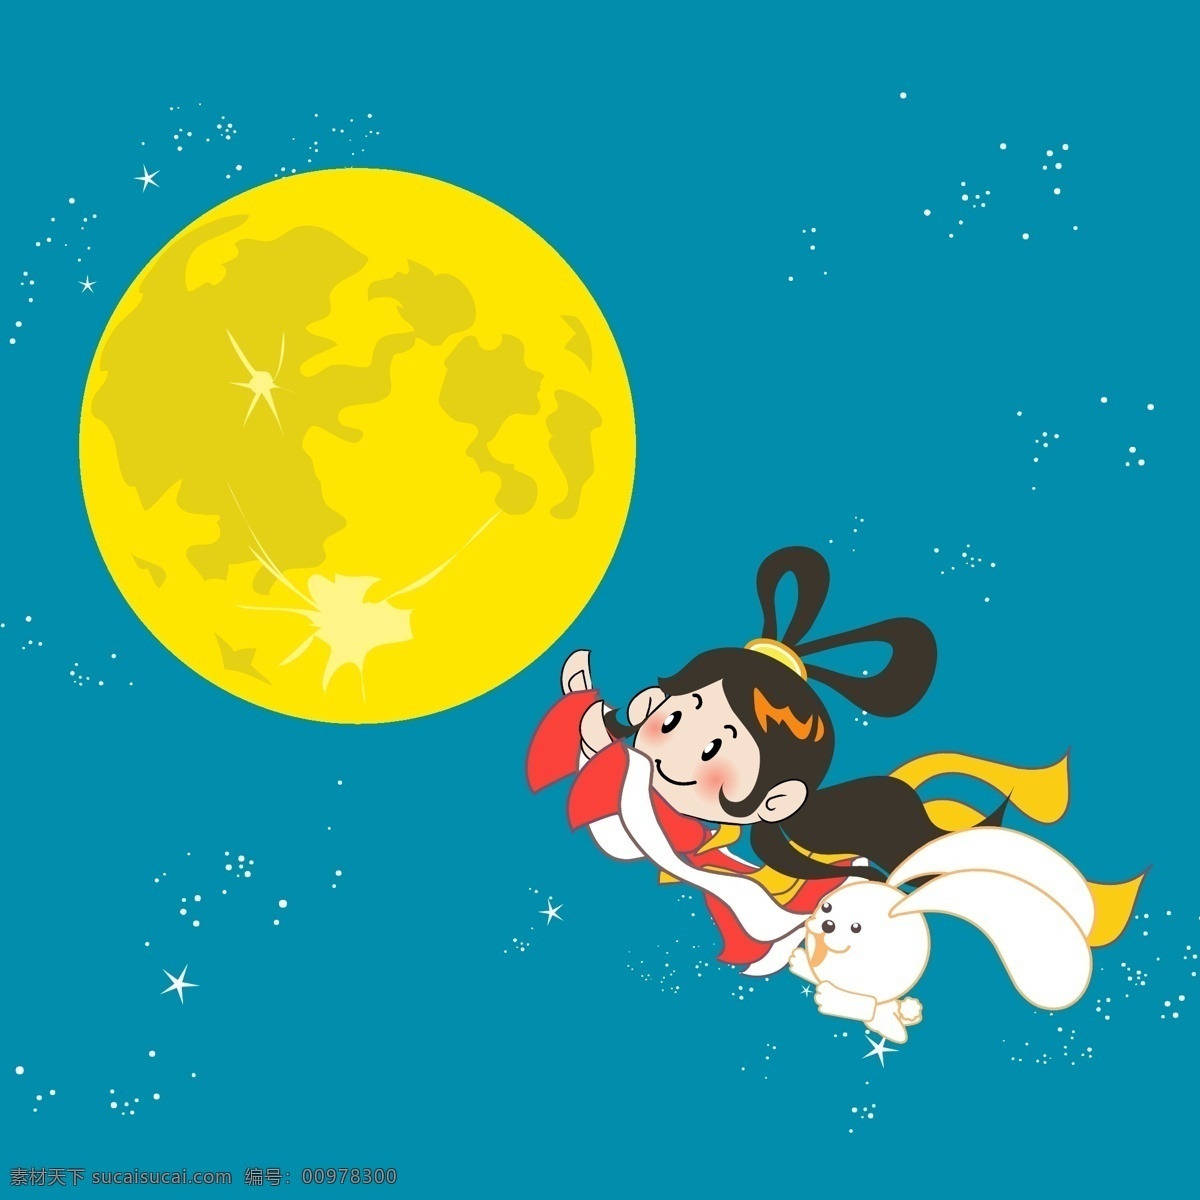 嫦娥奔月 月球 月亮 月光 嫦娥 月饼 中秋佳节 矢量文件 ai文件 动漫动画 动漫人物